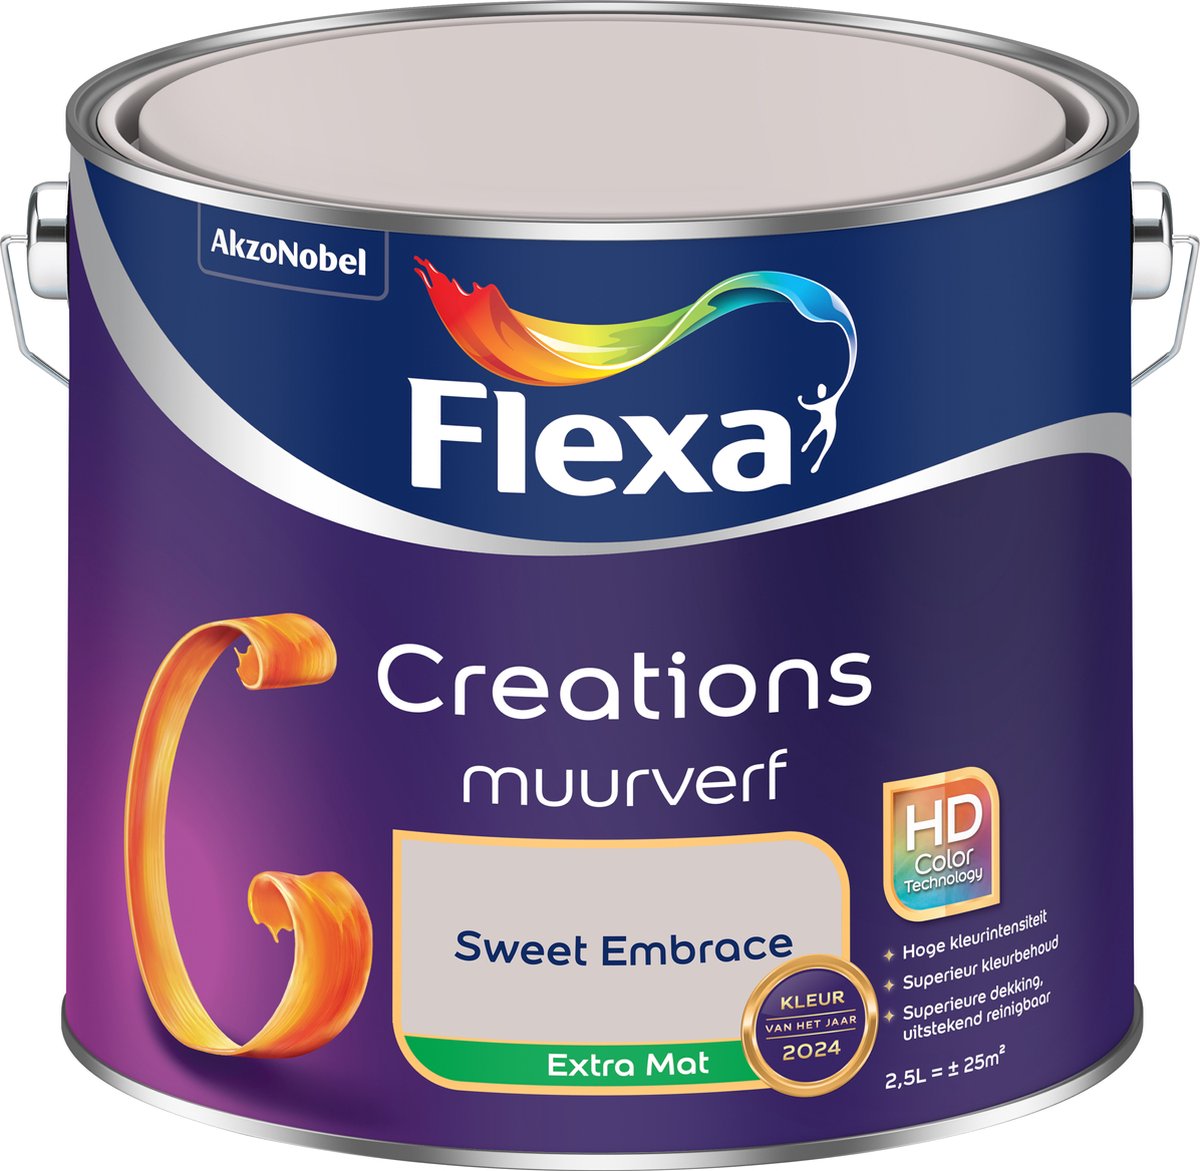 Flexa Creations - Muurverf - Extra Mat - KvhJ 2024 - Sweet Embrace - 2.5L - Flexa